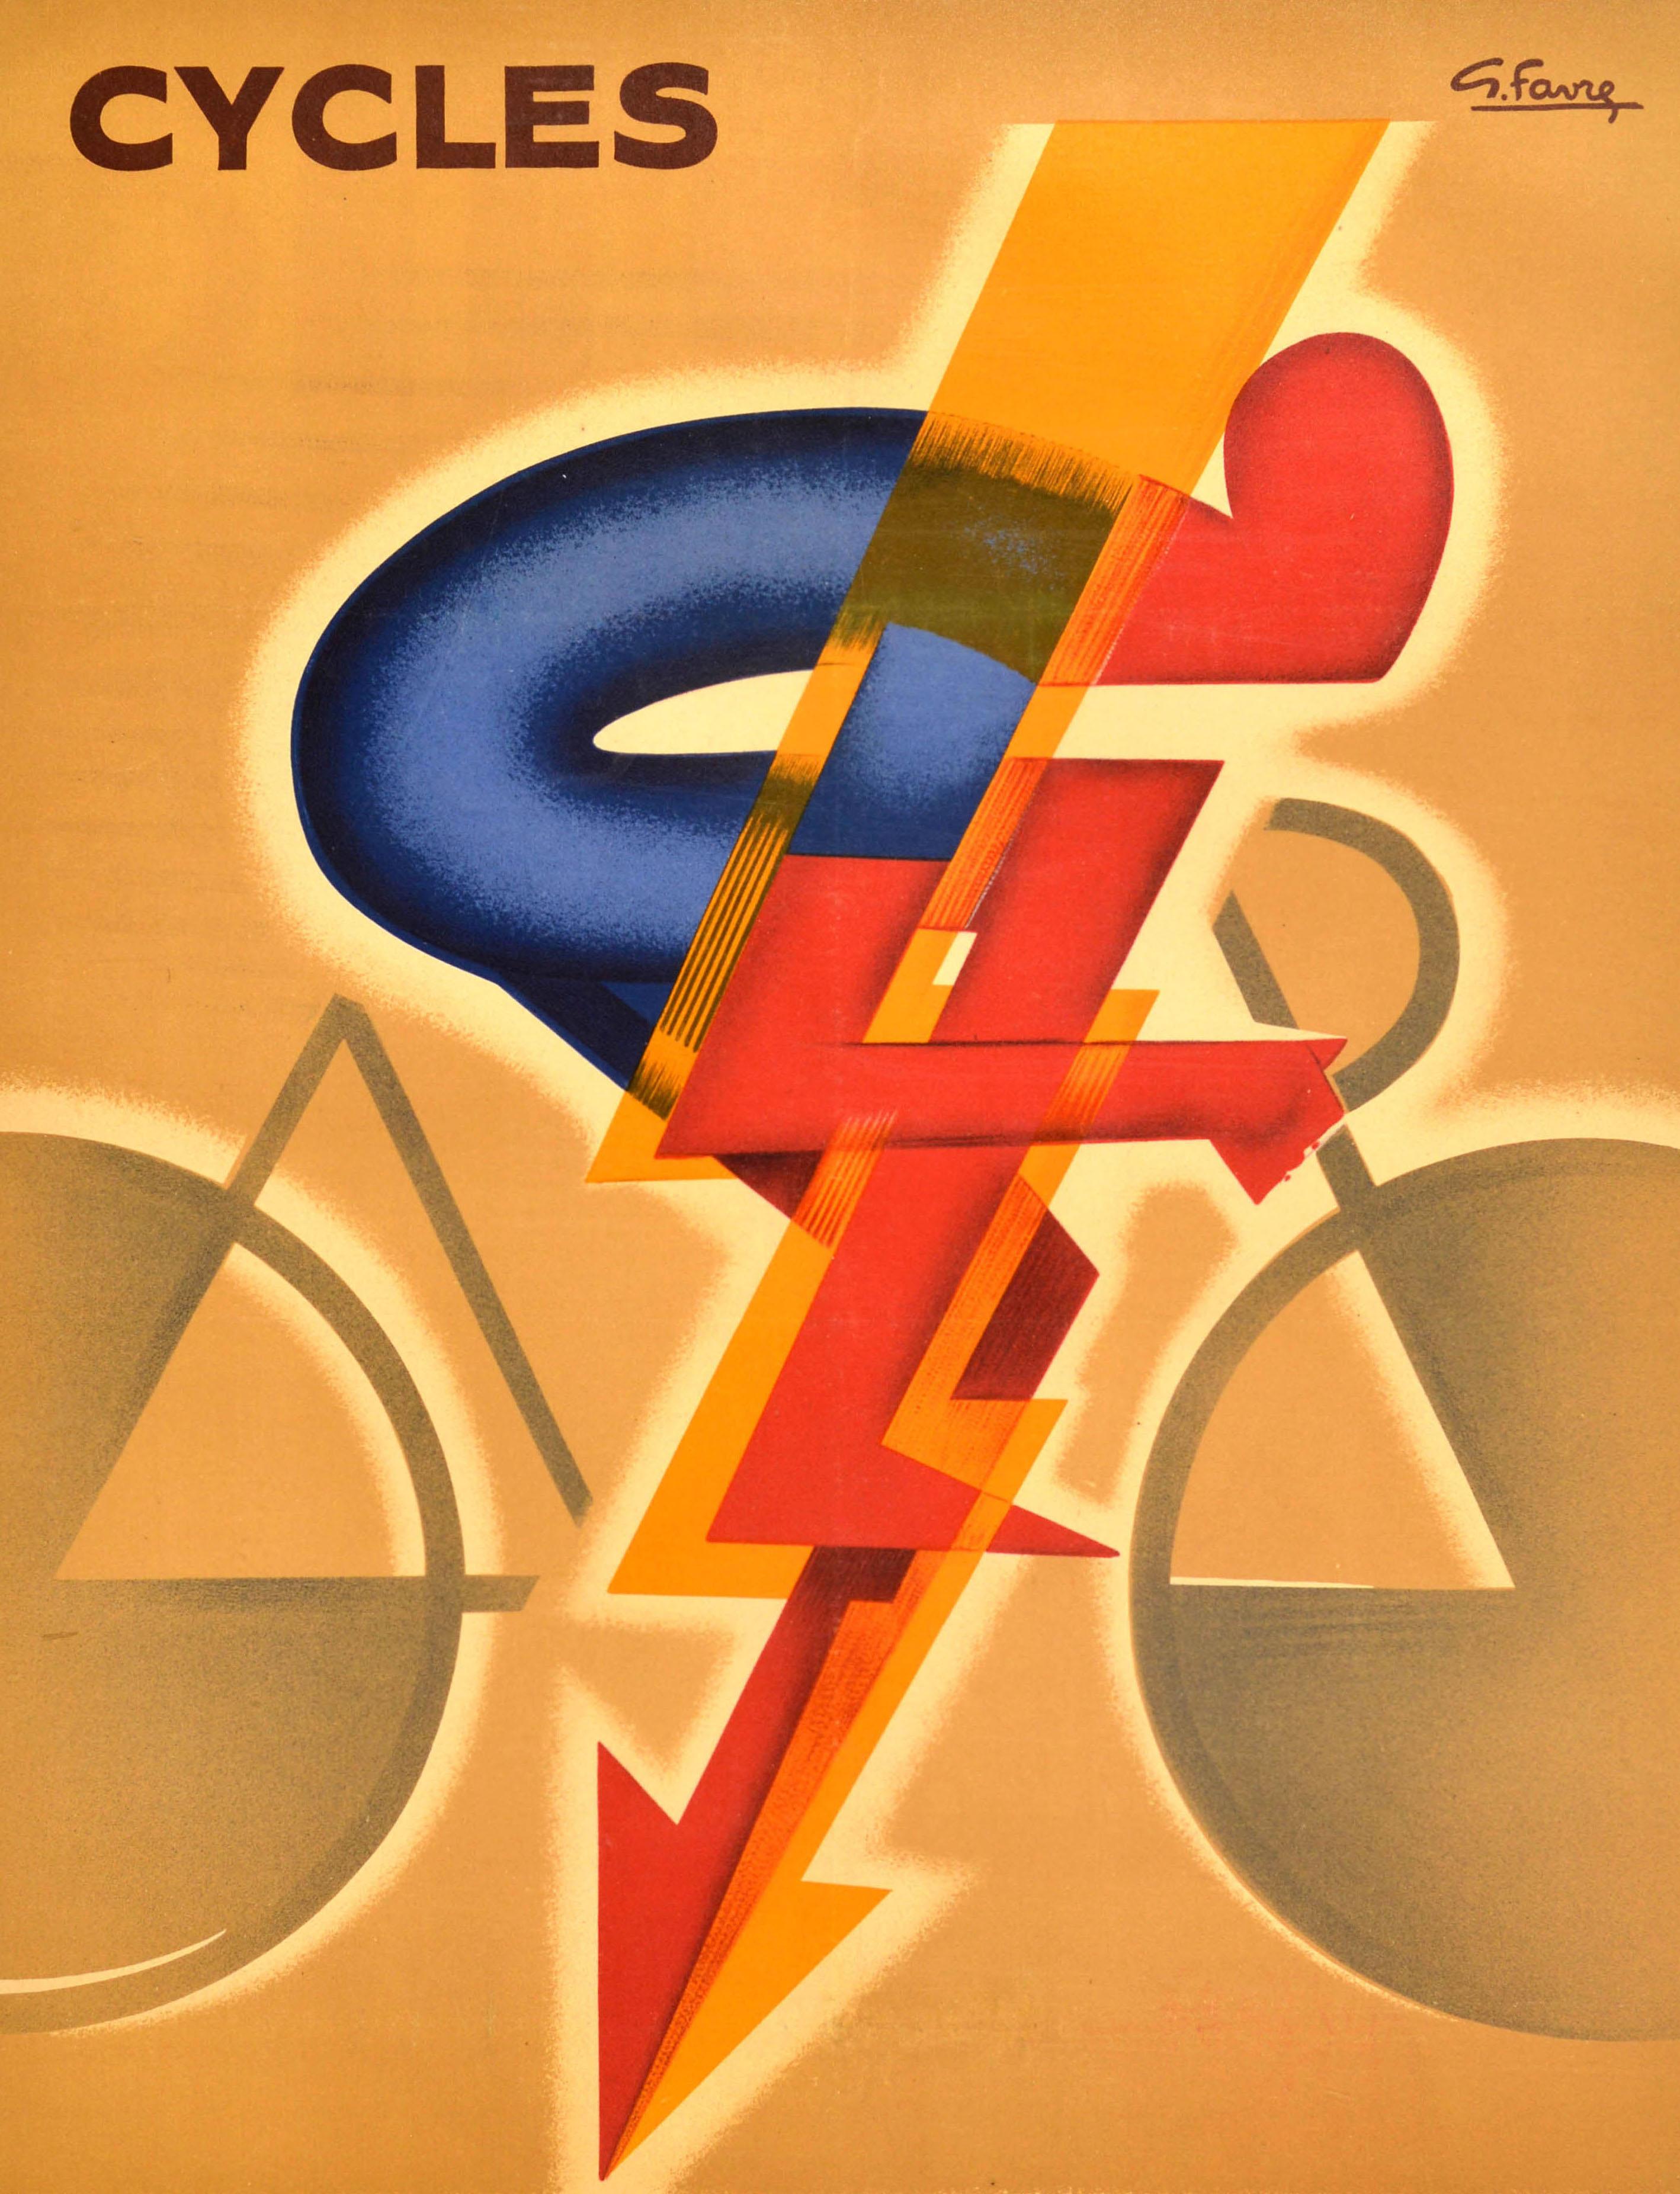 Affiche publicitaire ancienne pour une marque française de bicyclettes - Cycles Dilecta - présentant un dessin Art Déco dynamique et coloré représentant une figure stylisée d'un cycliste penché vers l'avant et roulant à vive allure, avec une flèche